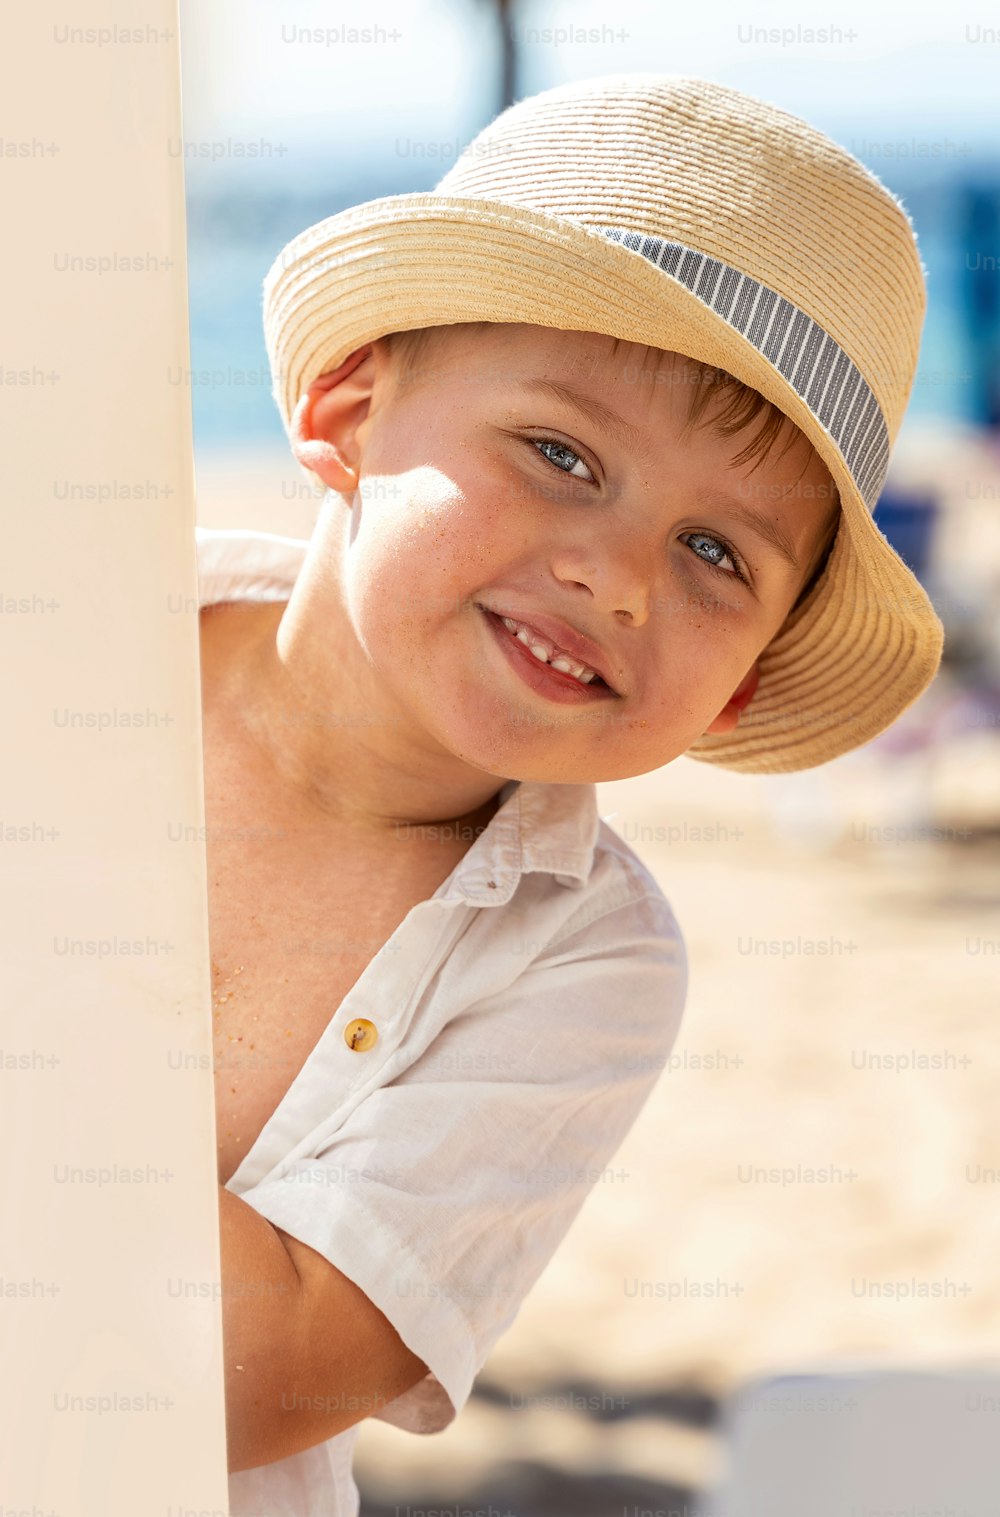 Ragazzino sorridente in cappello che gioca sulla spiaggia tropicale sabbiosa. Vibrazioni estive. Un sacco di spazio per la copia.